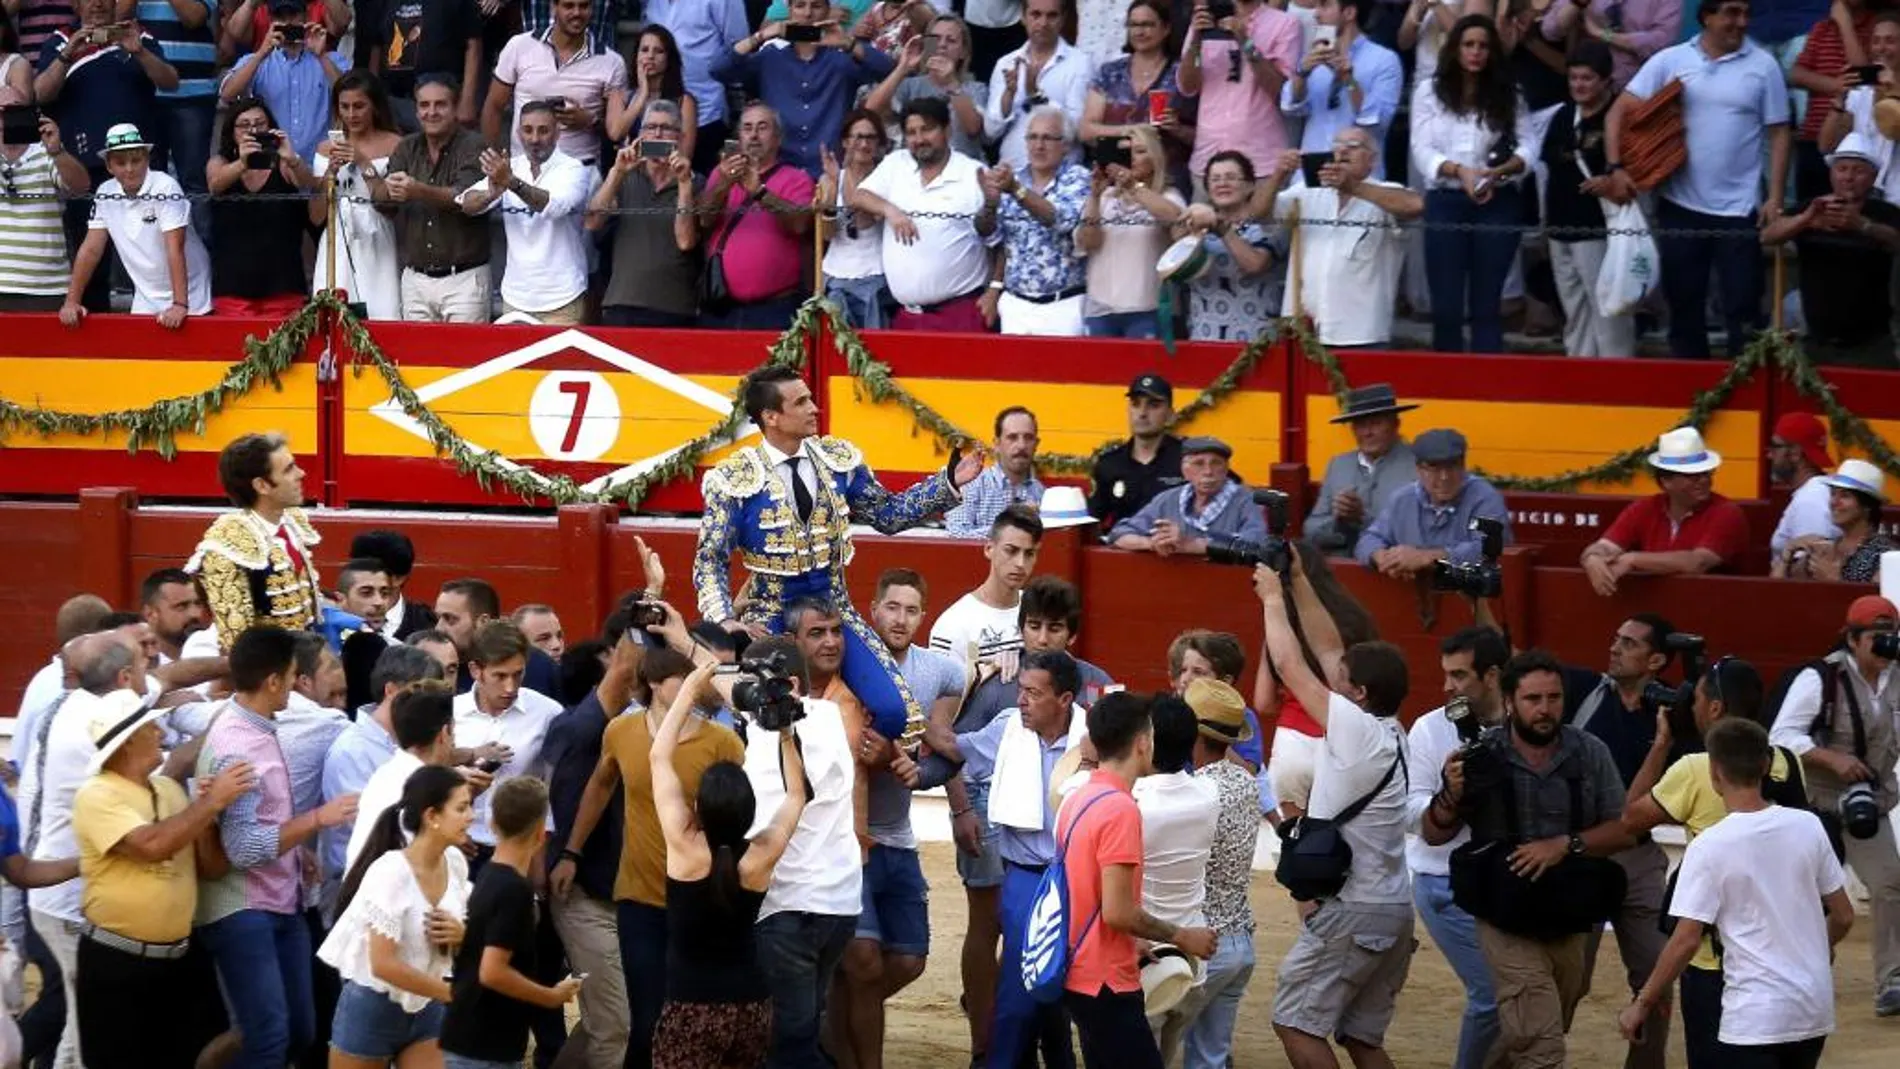 Los diestros José Tomás y Manzanares saliendo el año pasado a hombros de la plaza de toros de Alicante